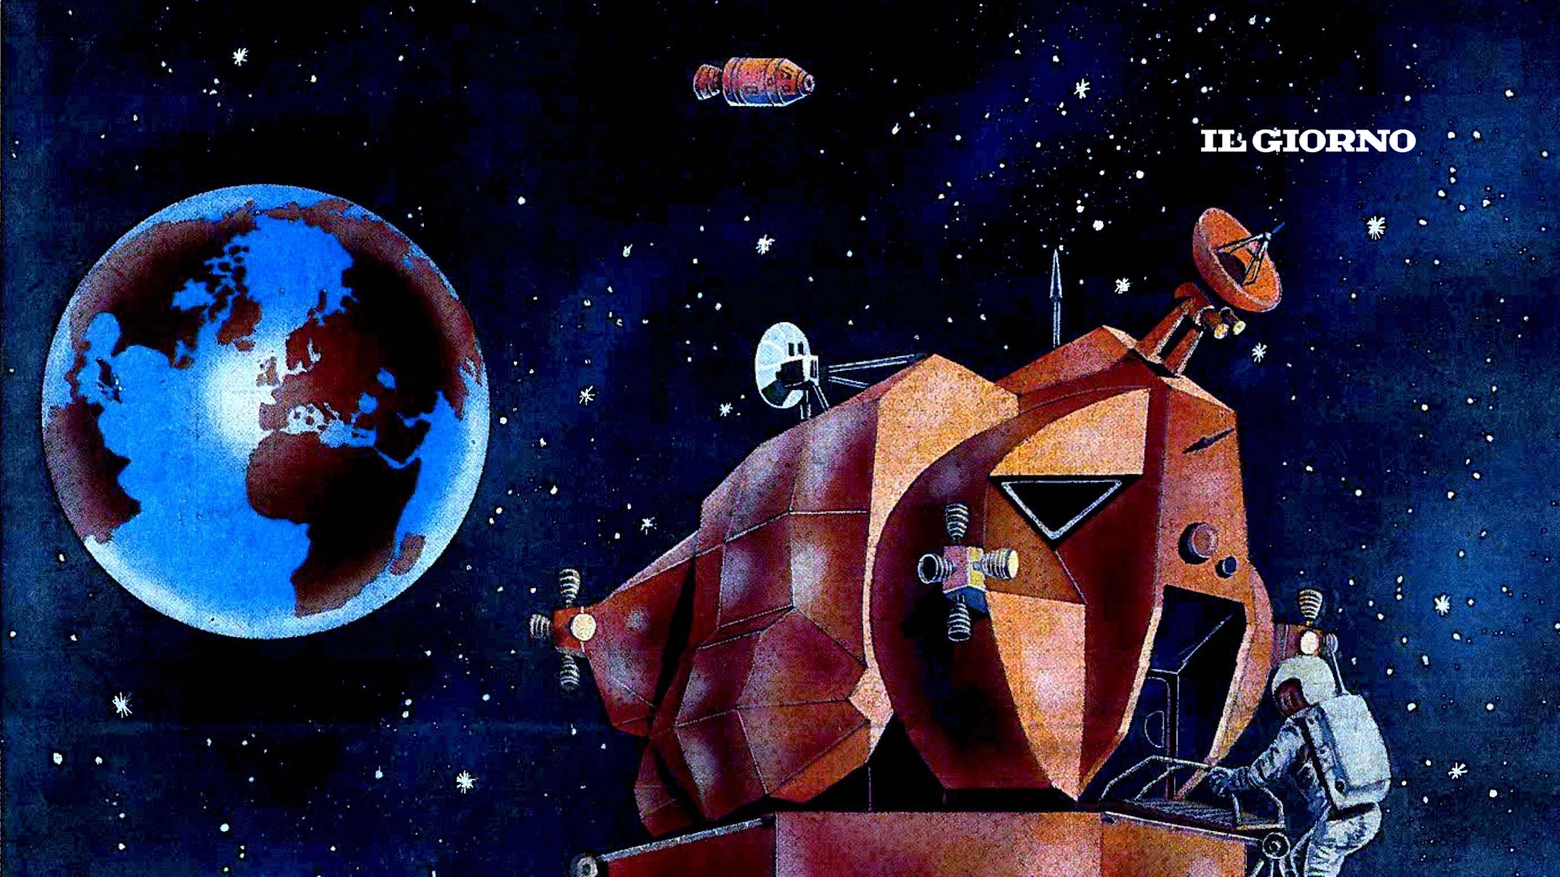 Illustrazione della prima pagina del Giorno per lo sbarco sulla Luna, nel 1969